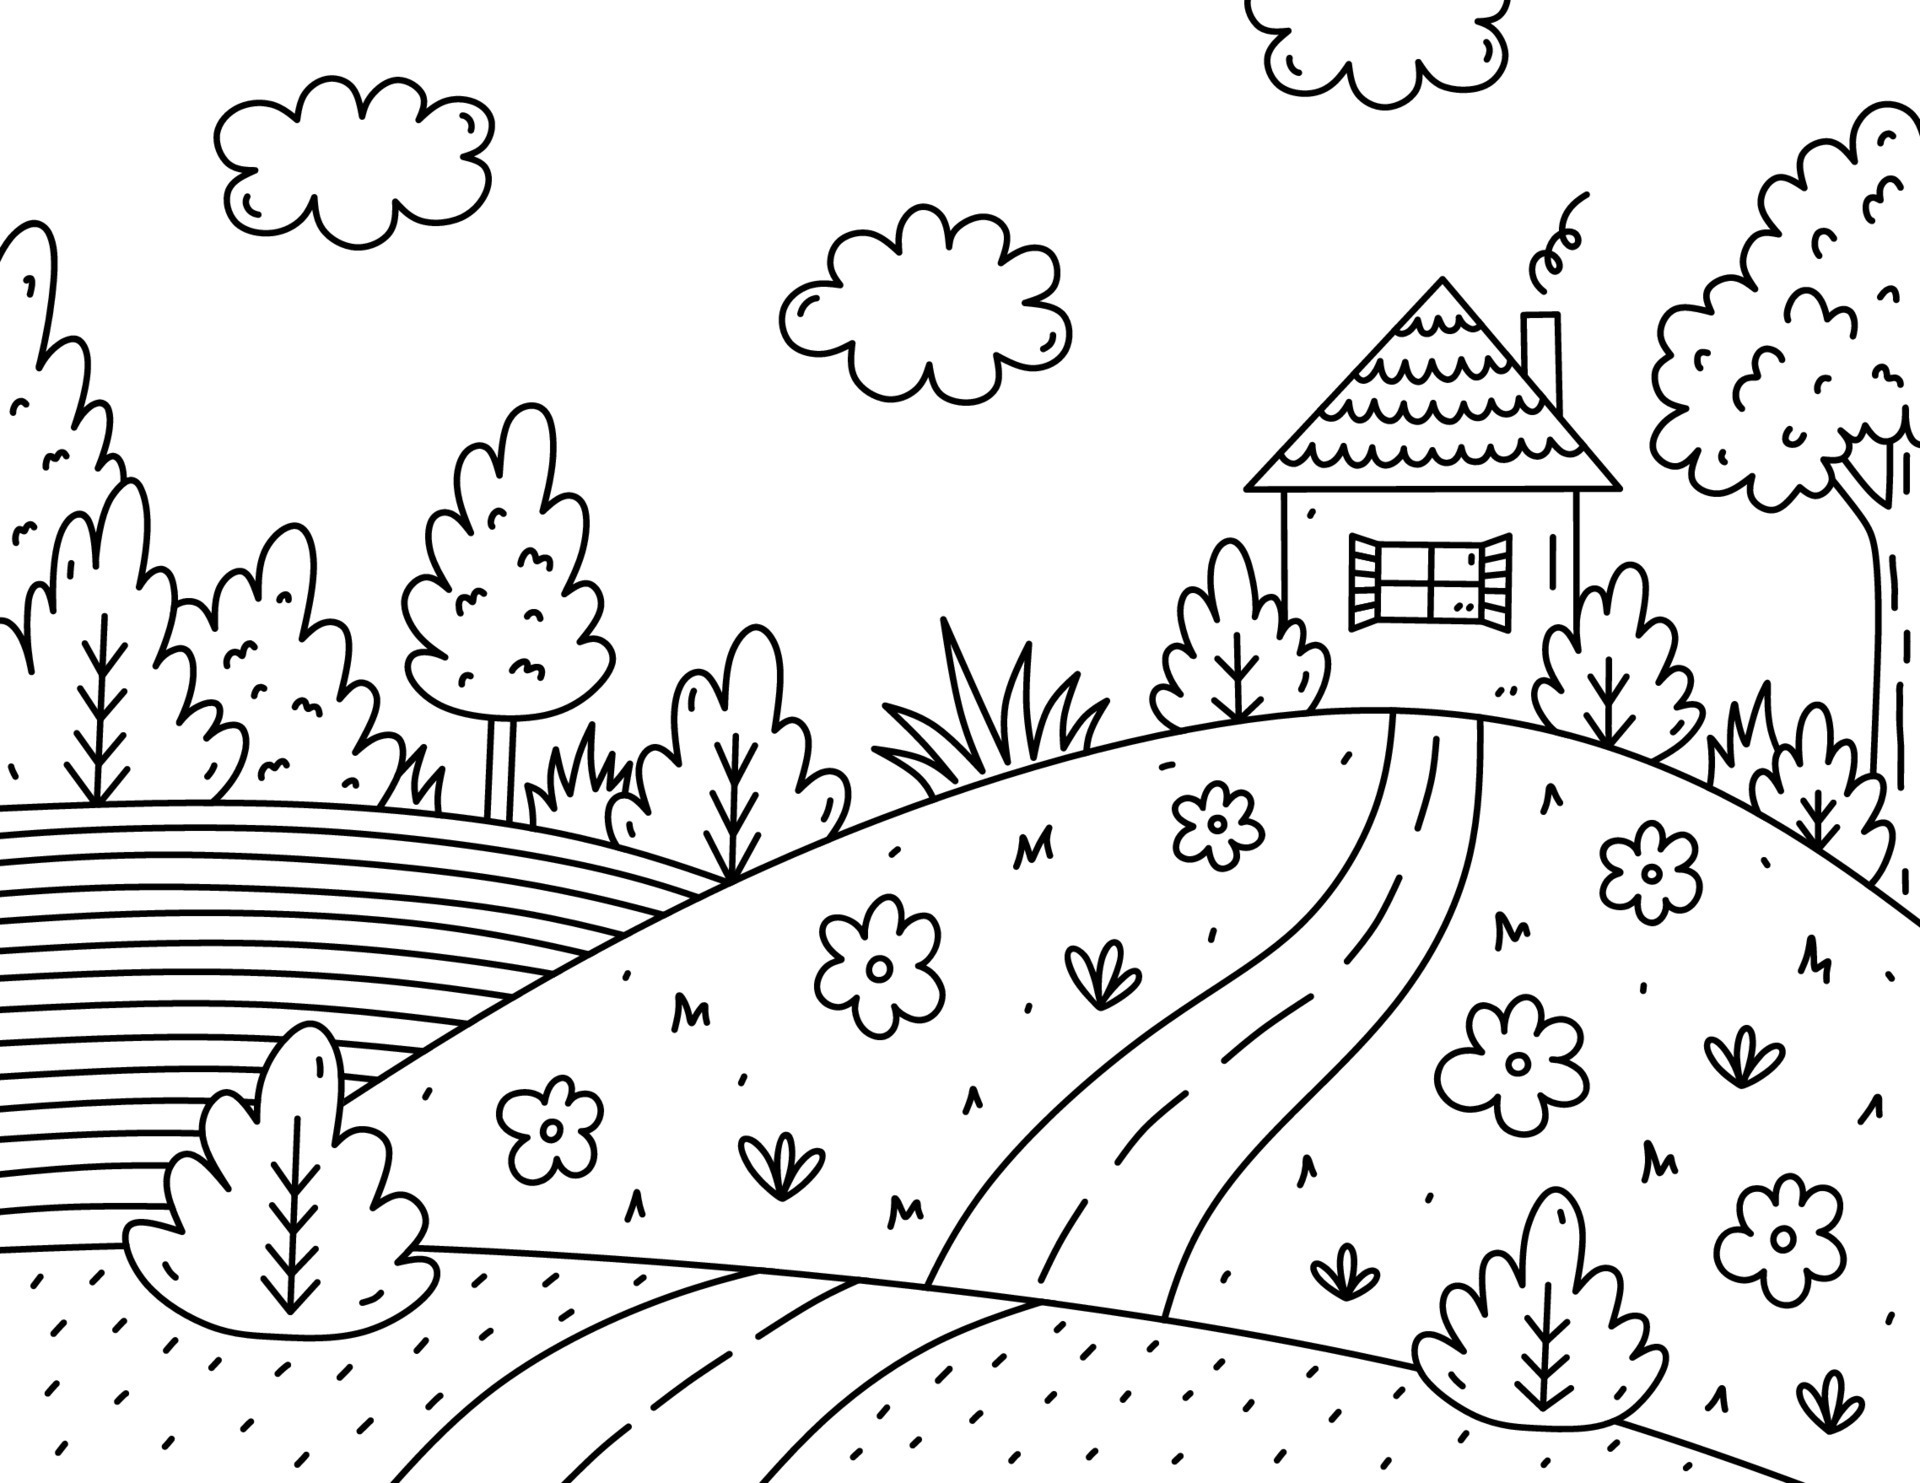 Página para colorear de niños lindos. paisaje con nubes, casa, árboles,  arbustos, flores, campo y camino. ilustración vectorial dibujada a mano en  estilo garabato. libro de colorear de dibujos animados para niños.